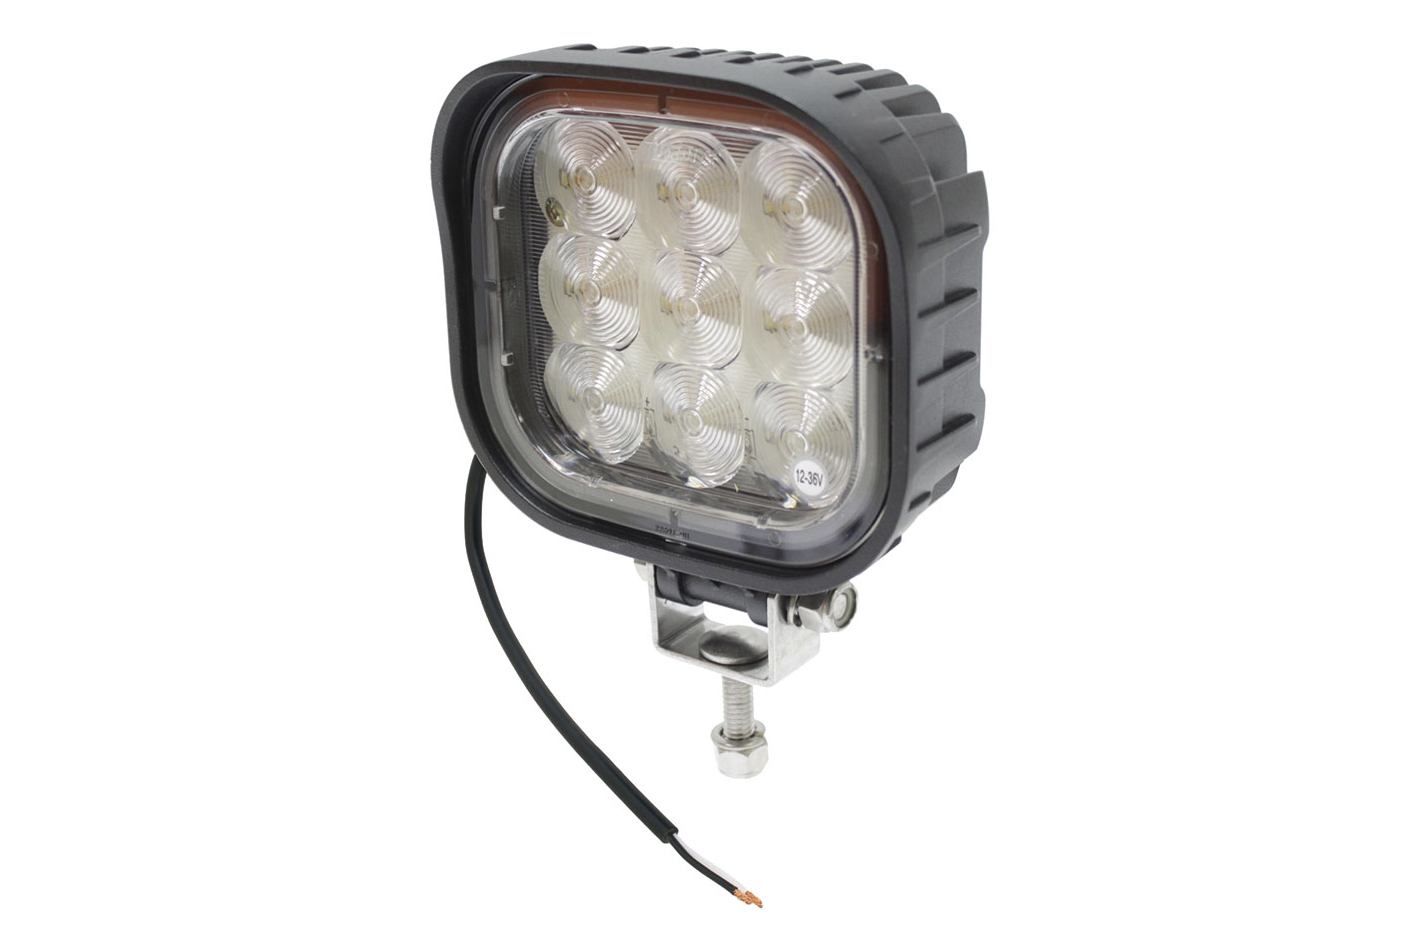 LED Arbeitsscheinwerfer rund 3600 Lumen Vibrationsfestigkeit 15 G